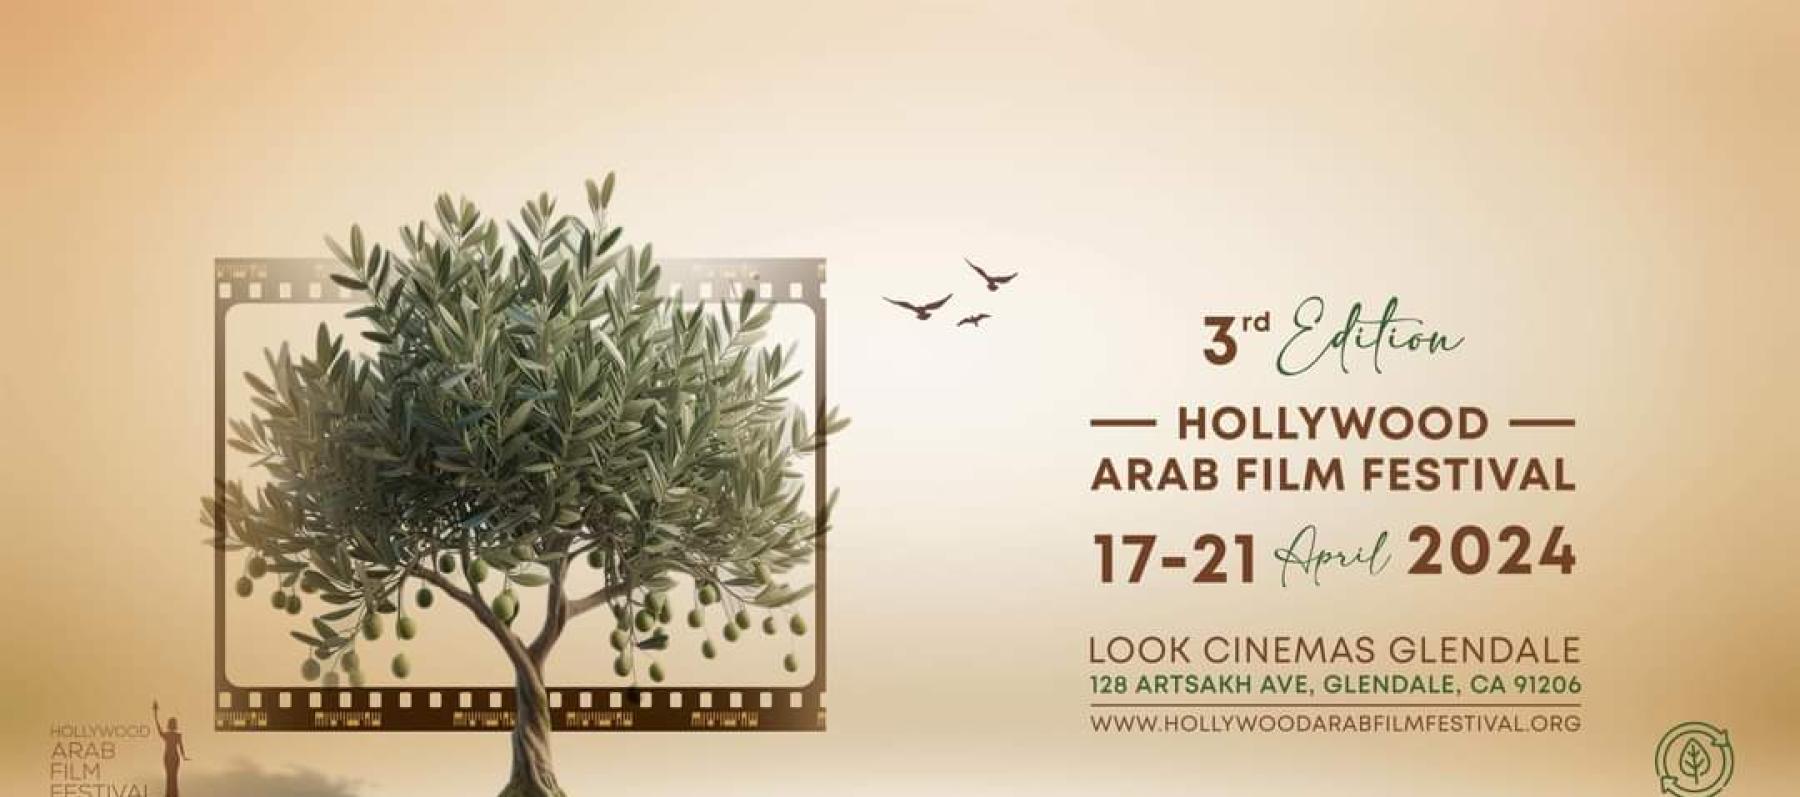 فيلم "رحلة 404" يفتتح مهرجان هوليوود للفيلم العربي وتكريم إلهام شاهين